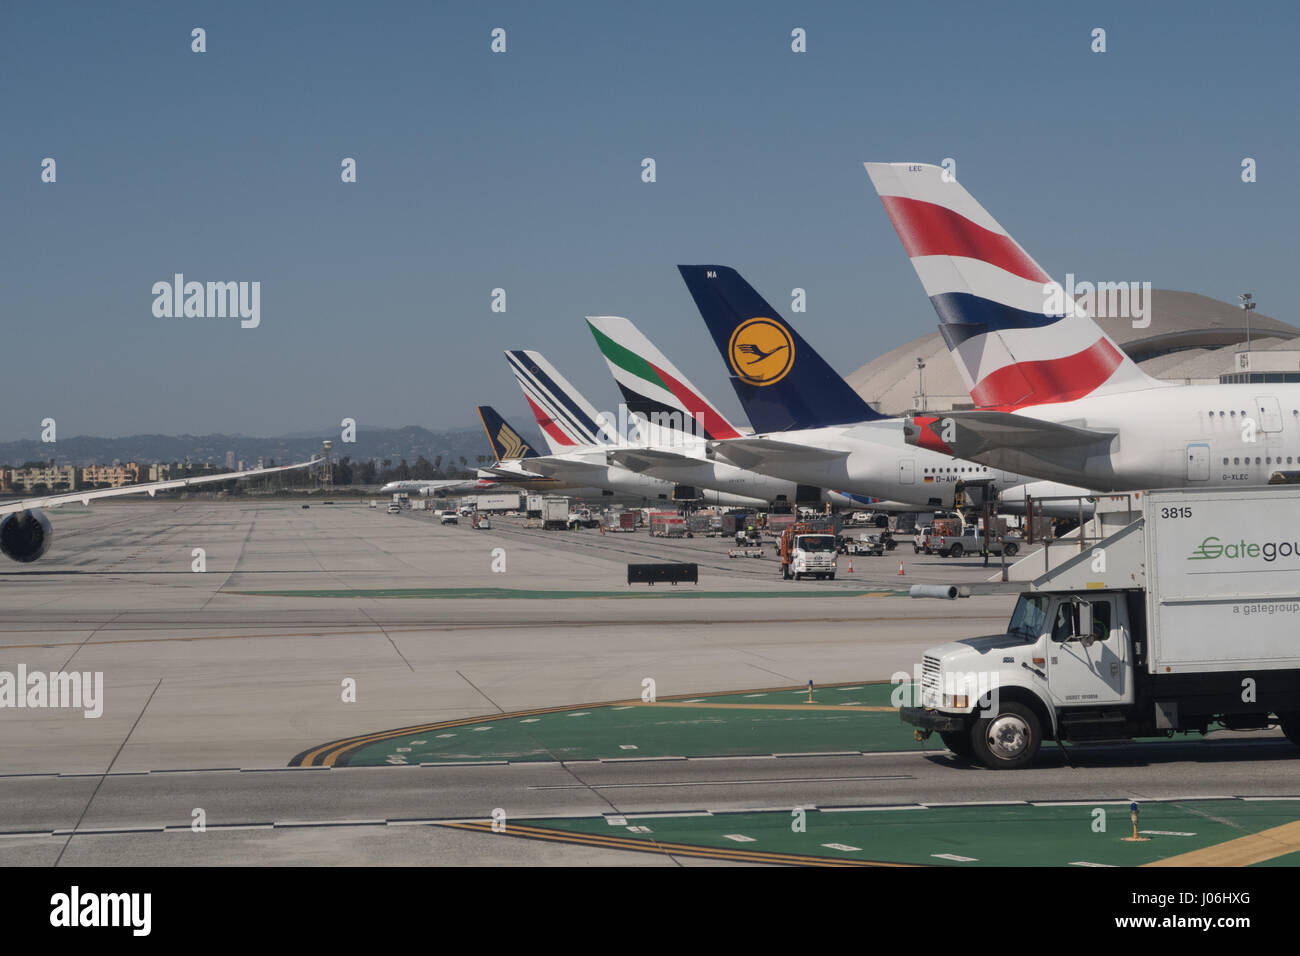 Mehrere Flugzeuge der Airline am LAX Flughafen Stockfotografie - Alamy